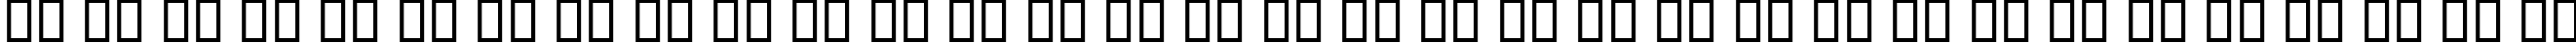 Пример написания русского алфавита шрифтом B Shiraz